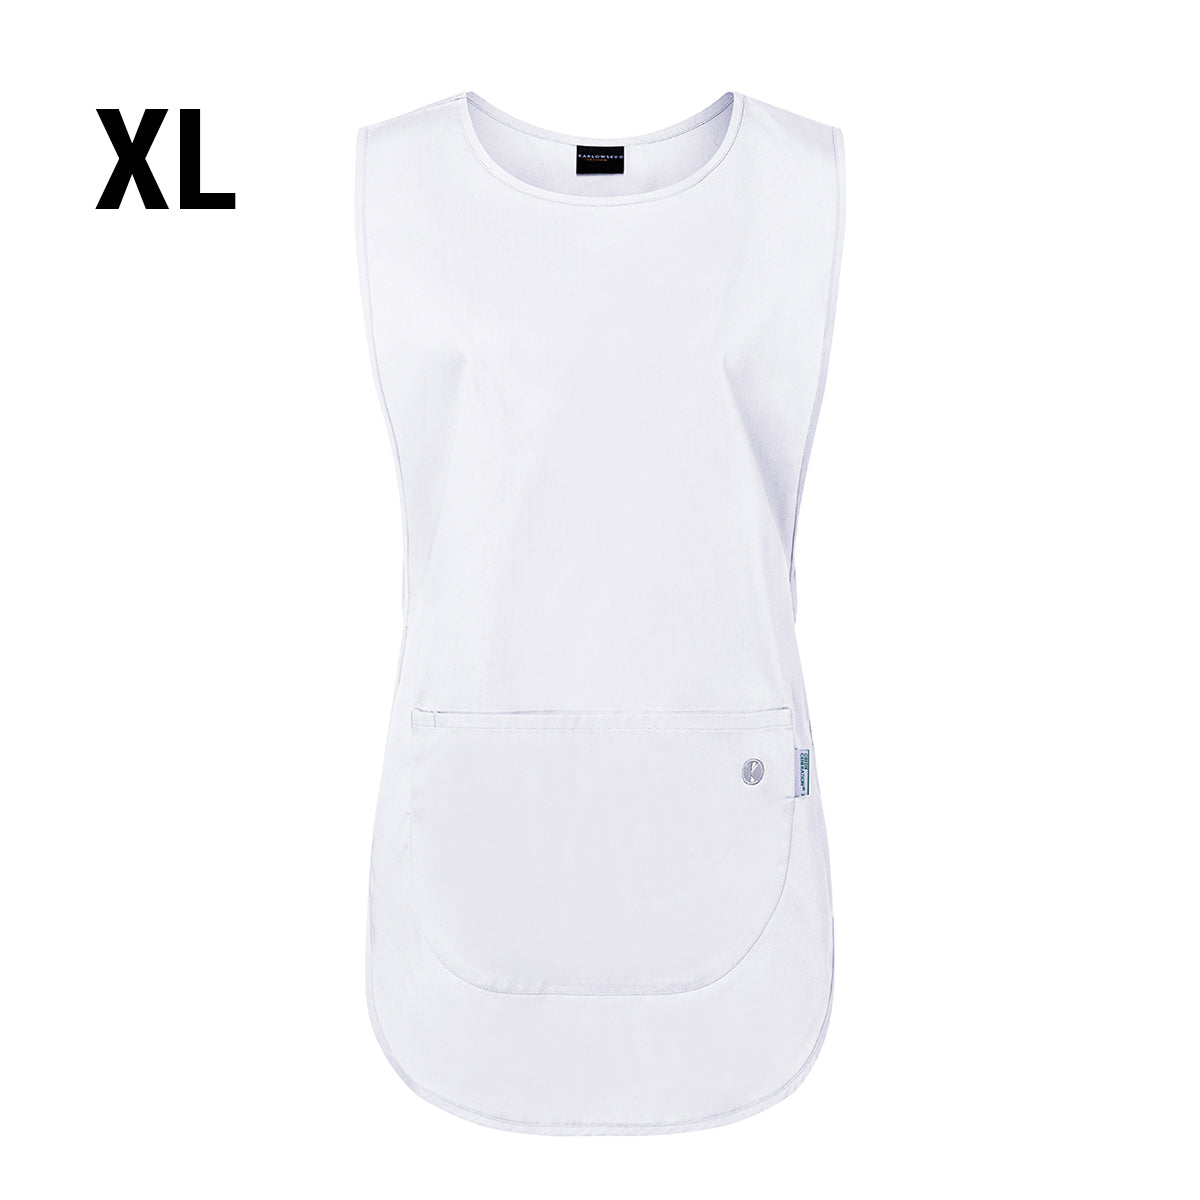 (6 stk.) Karlowsky - Throw Over Jacket Essential - Hvid - Størrelse: XL